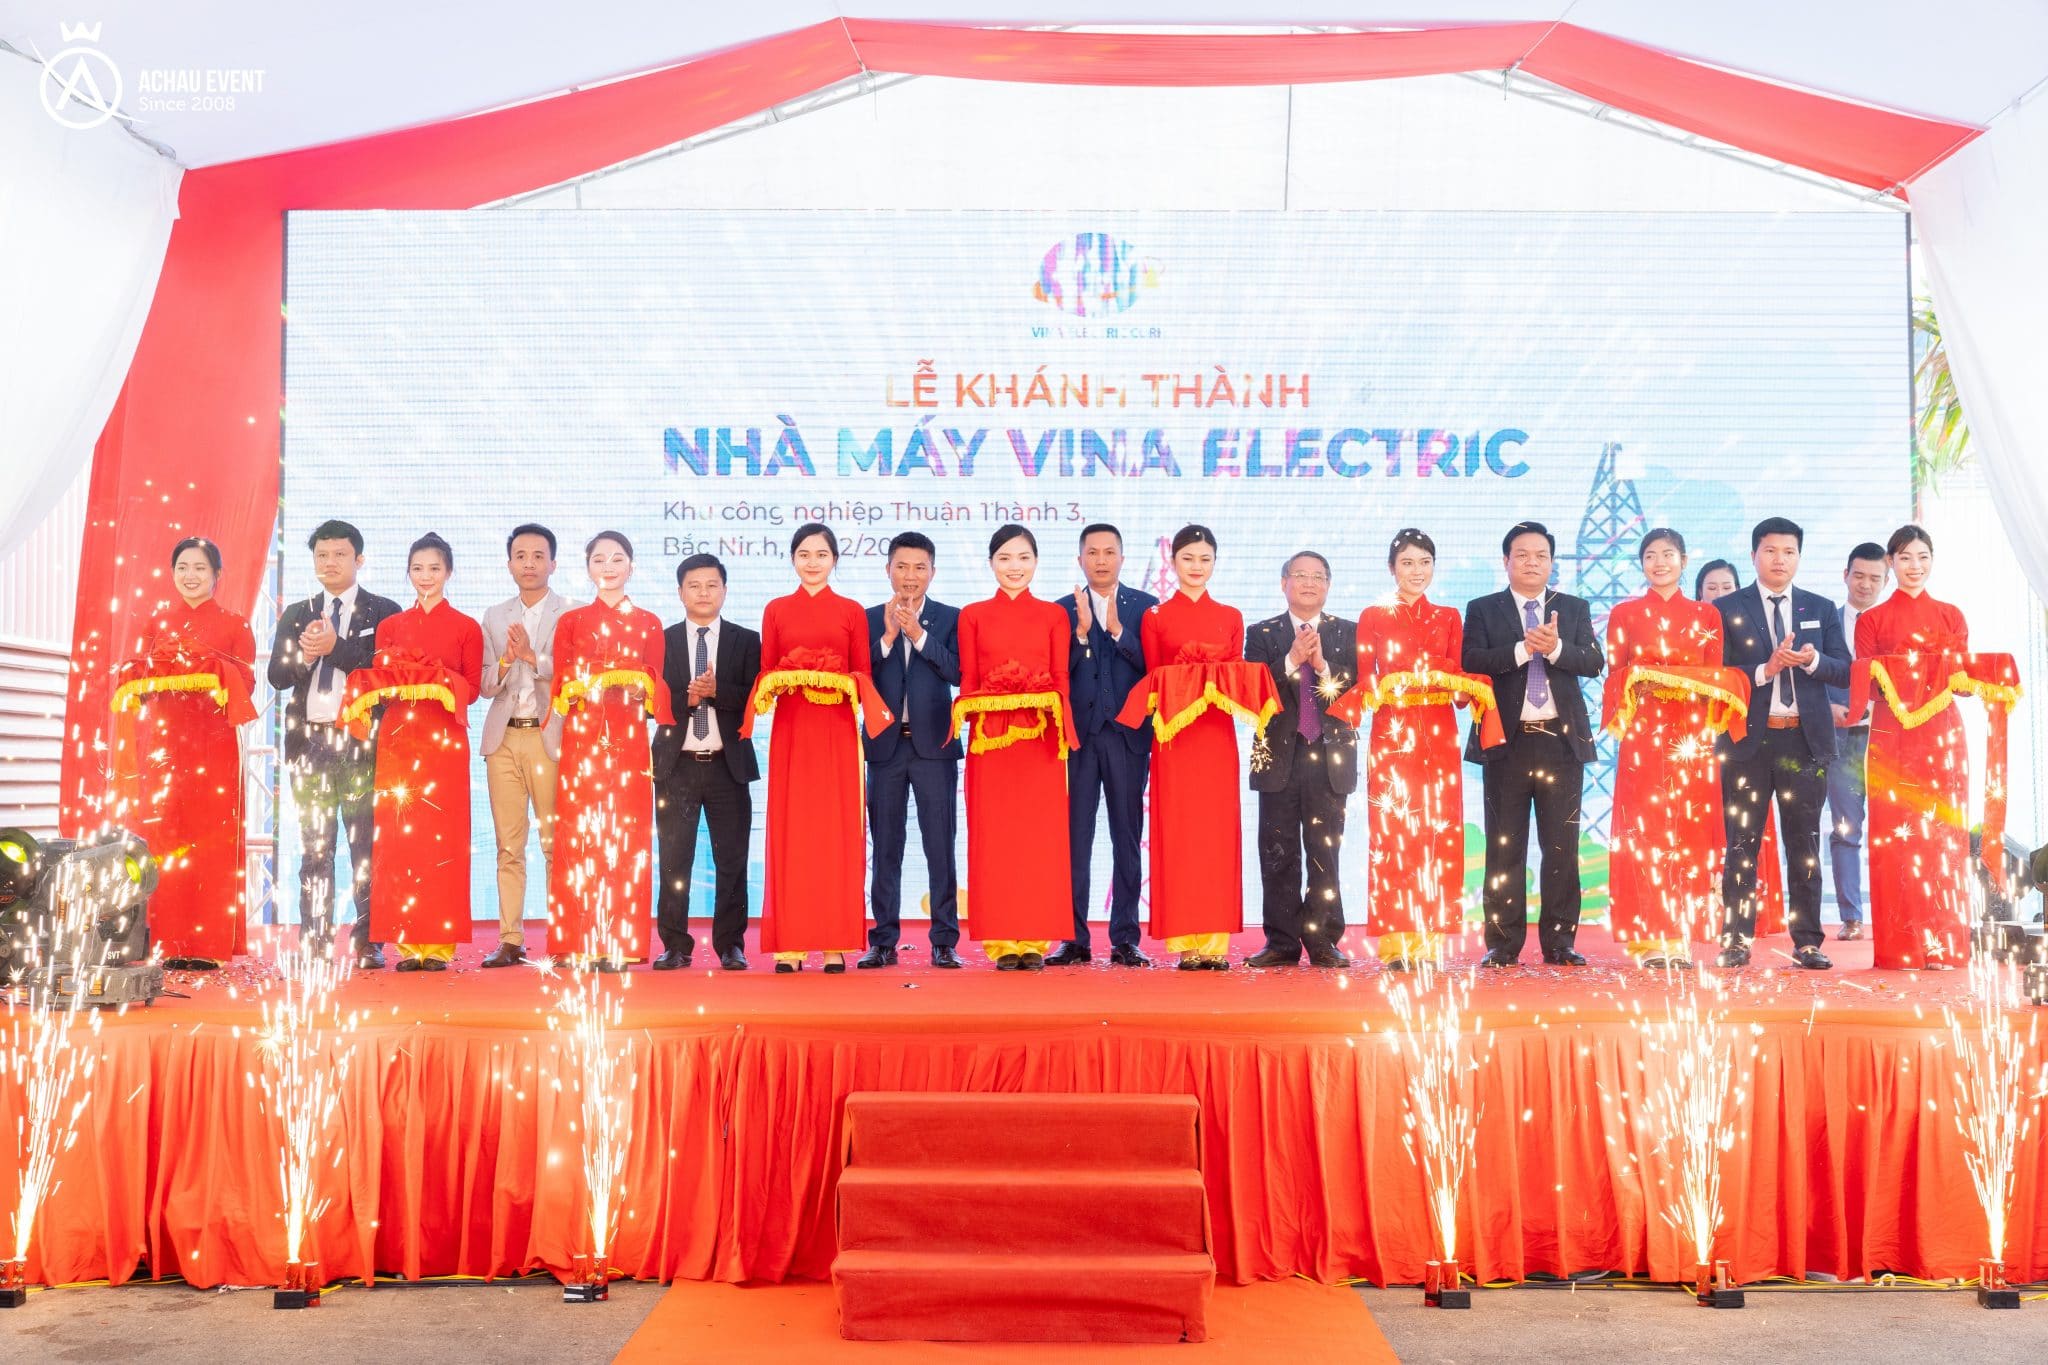 Buổi lễ khánh thành nhà máy Vina Electric diễn ra thành công tốt đẹp